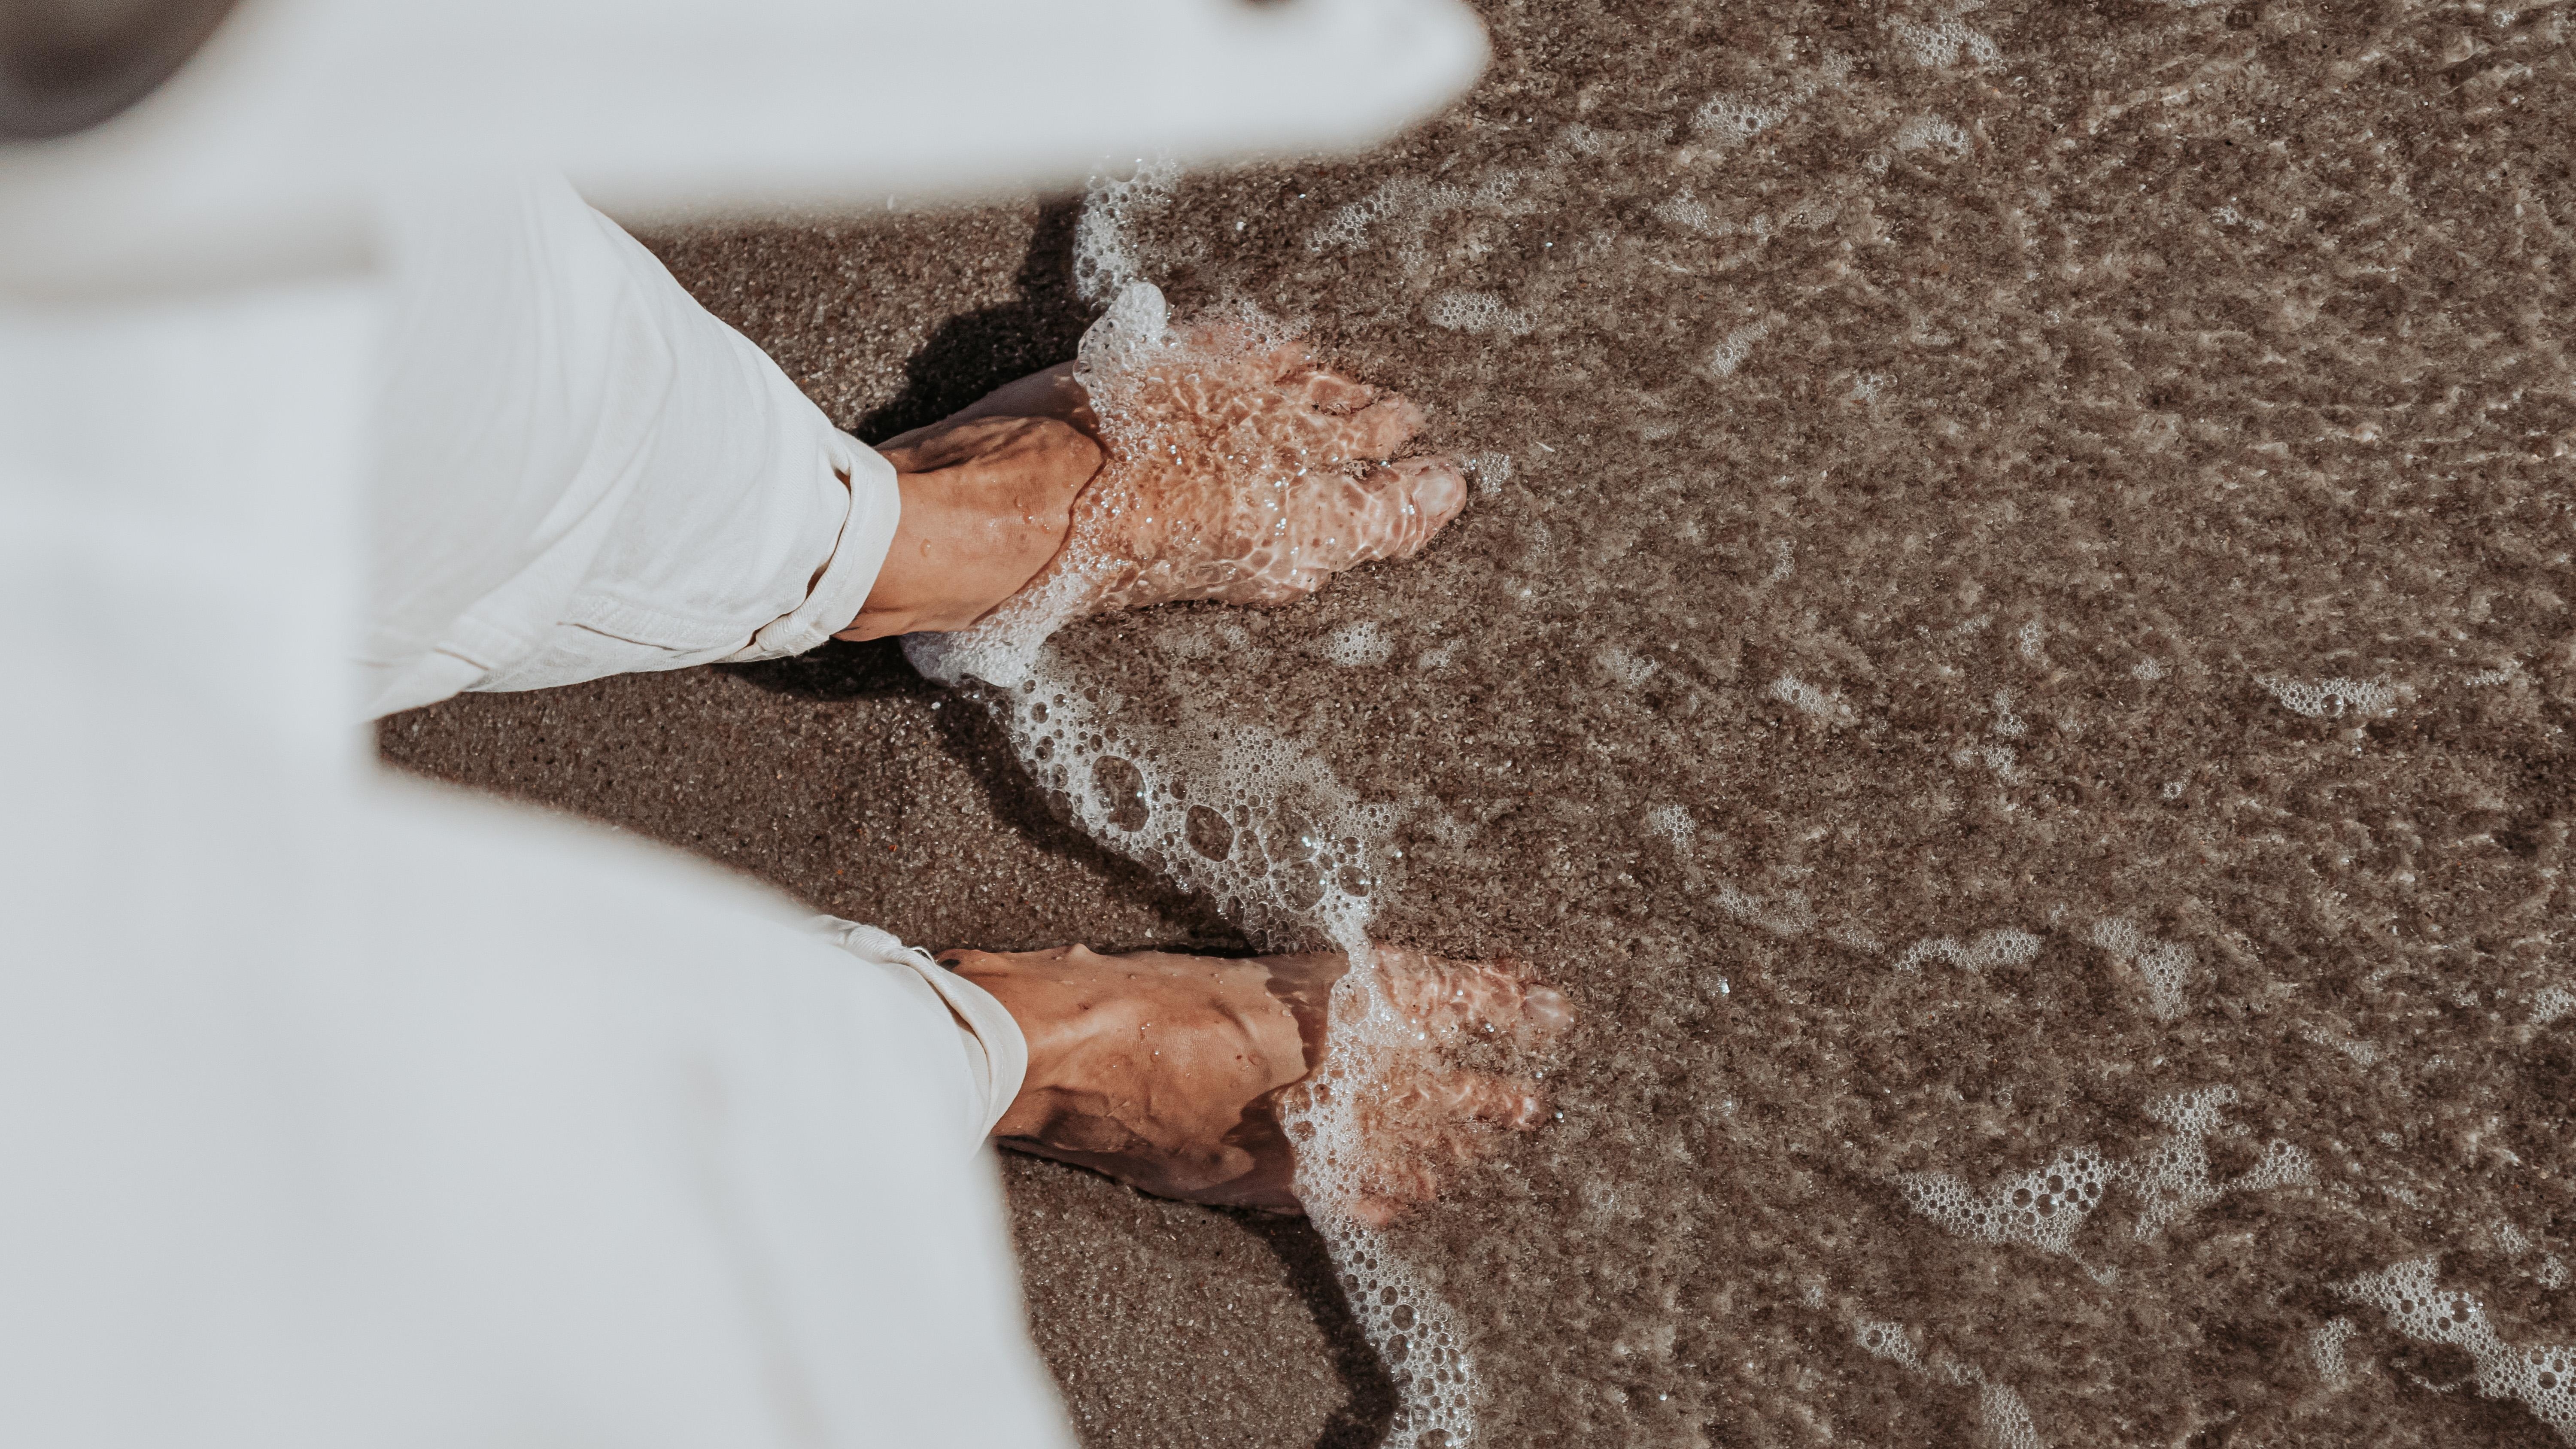 Eines dieser Lieblingsgefühle: Füße im Sand 👣 #naturliebe #travelchallenge